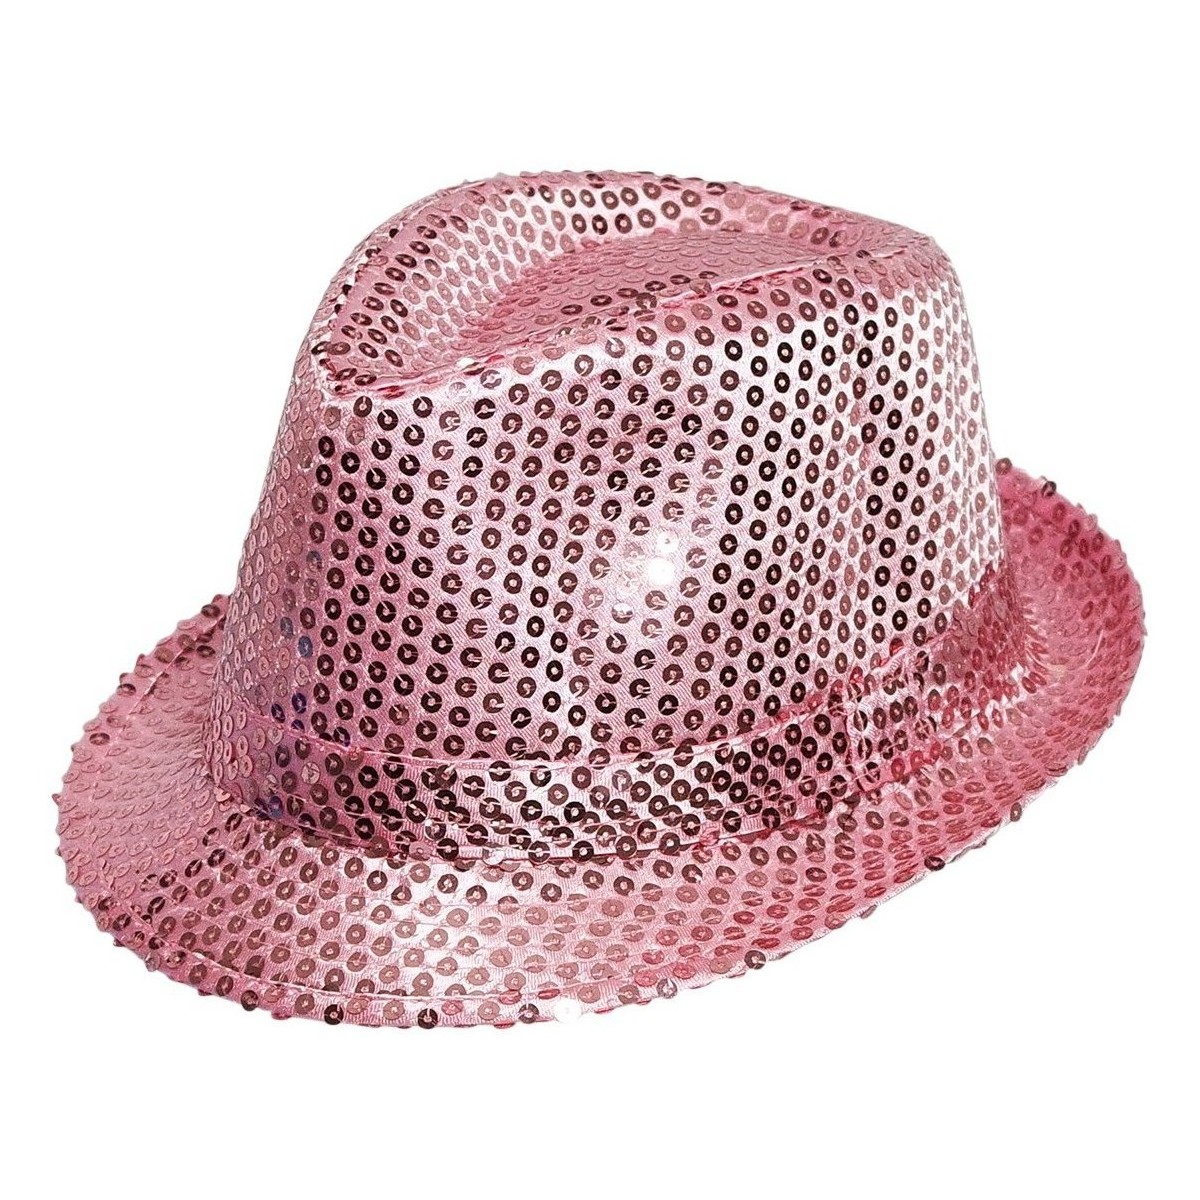 Accessoires textile Chapeaux Chapeau-Tendance Chapeau de fête paillettes Autres